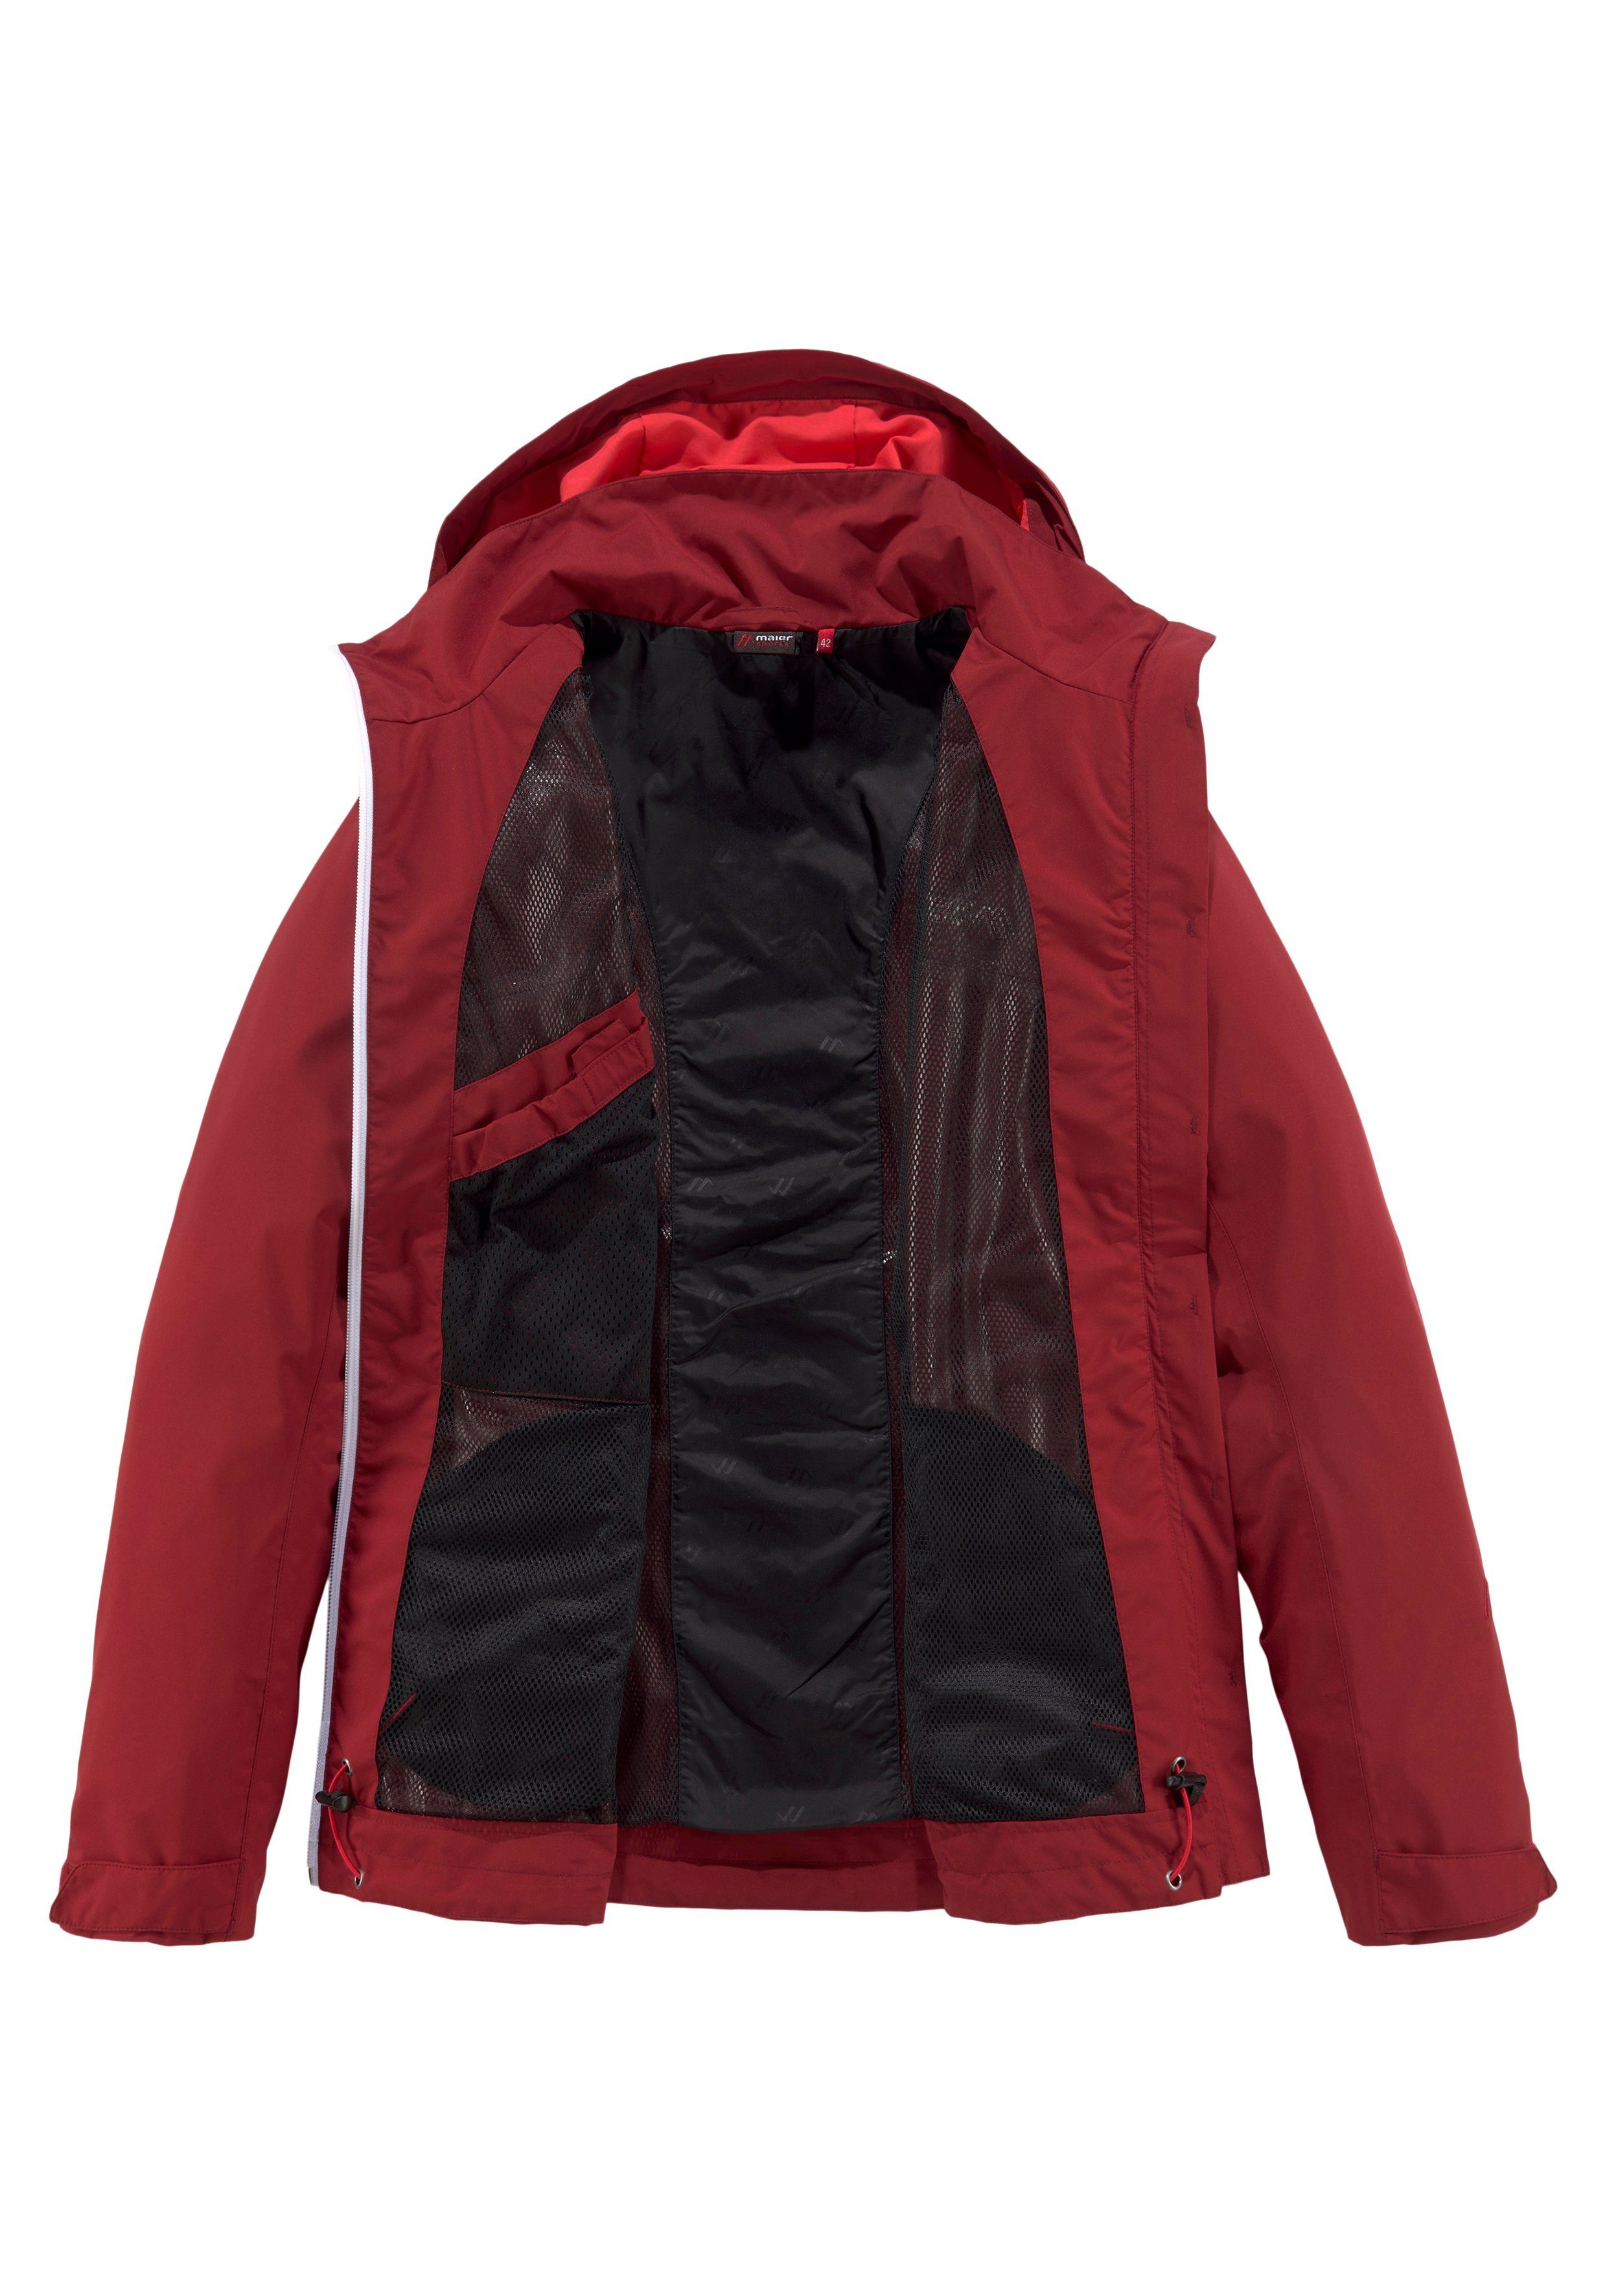 Übergangsjacke, in erhältlich Größen auch Maier großen Sports Wasserdichte Outdoorjacke rost-rot